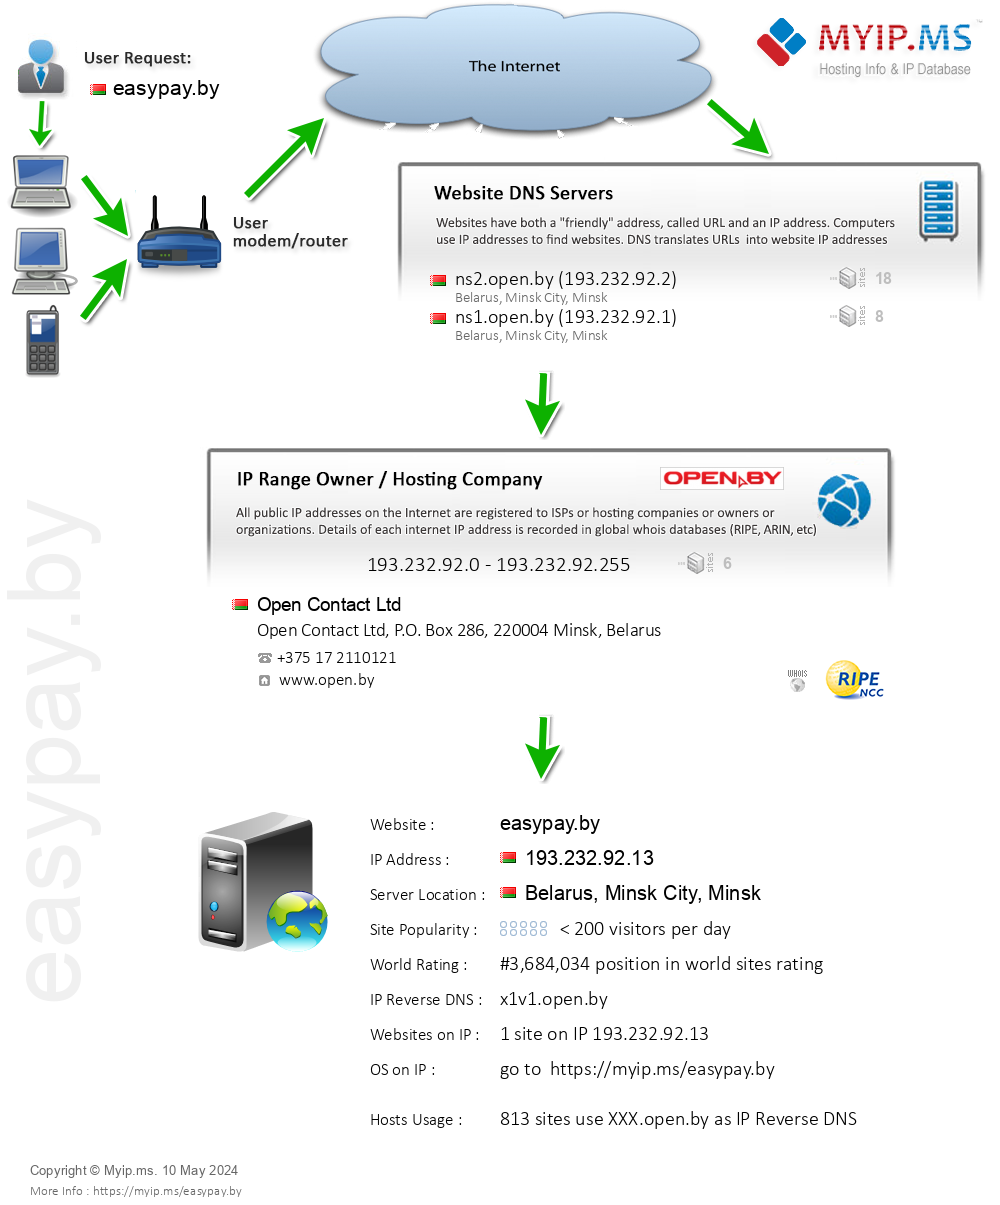 Easypay.by - Website Hosting Visual IP Diagram